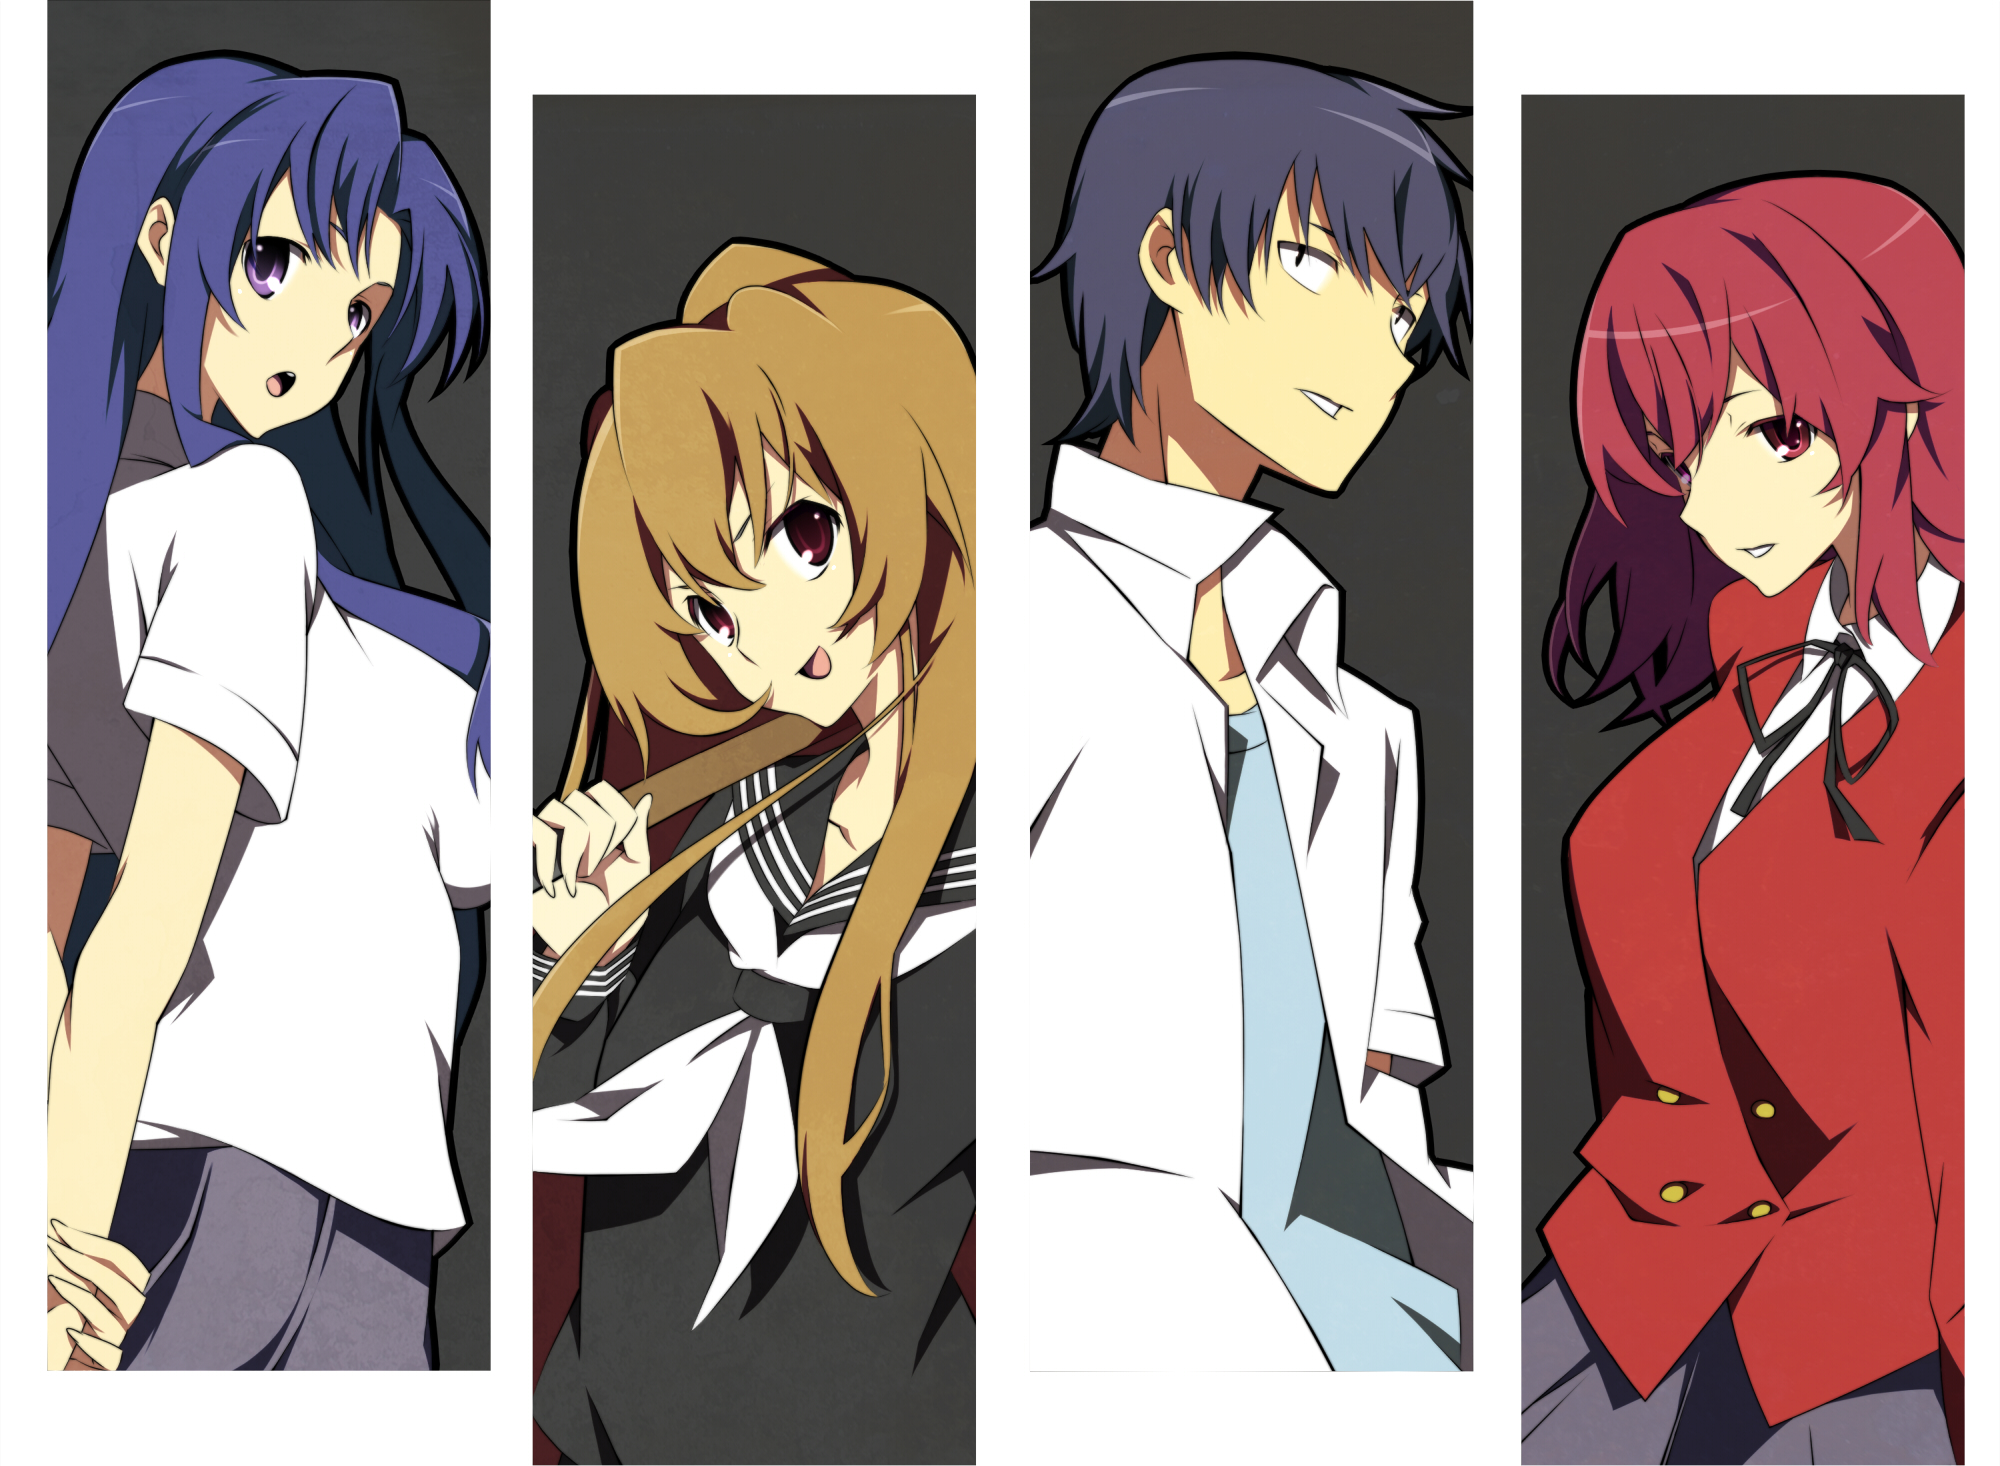 Taiga, Ryuji, Yusaku, Minori and Ami in Toradora! wallpaper